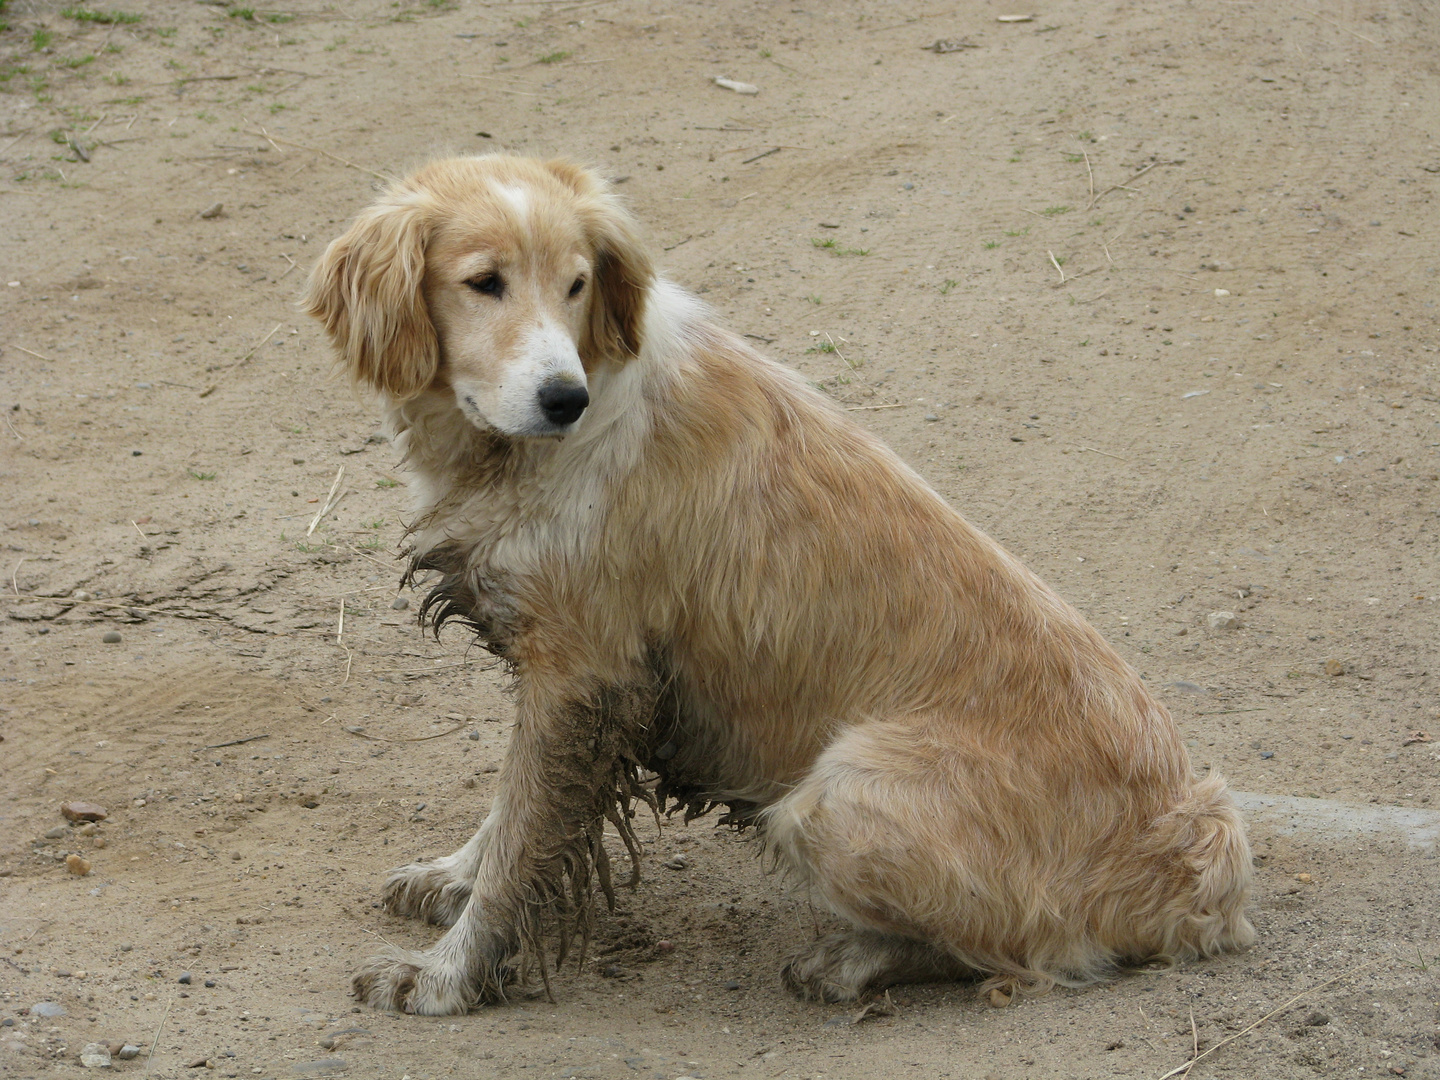 a sand-coloured dog